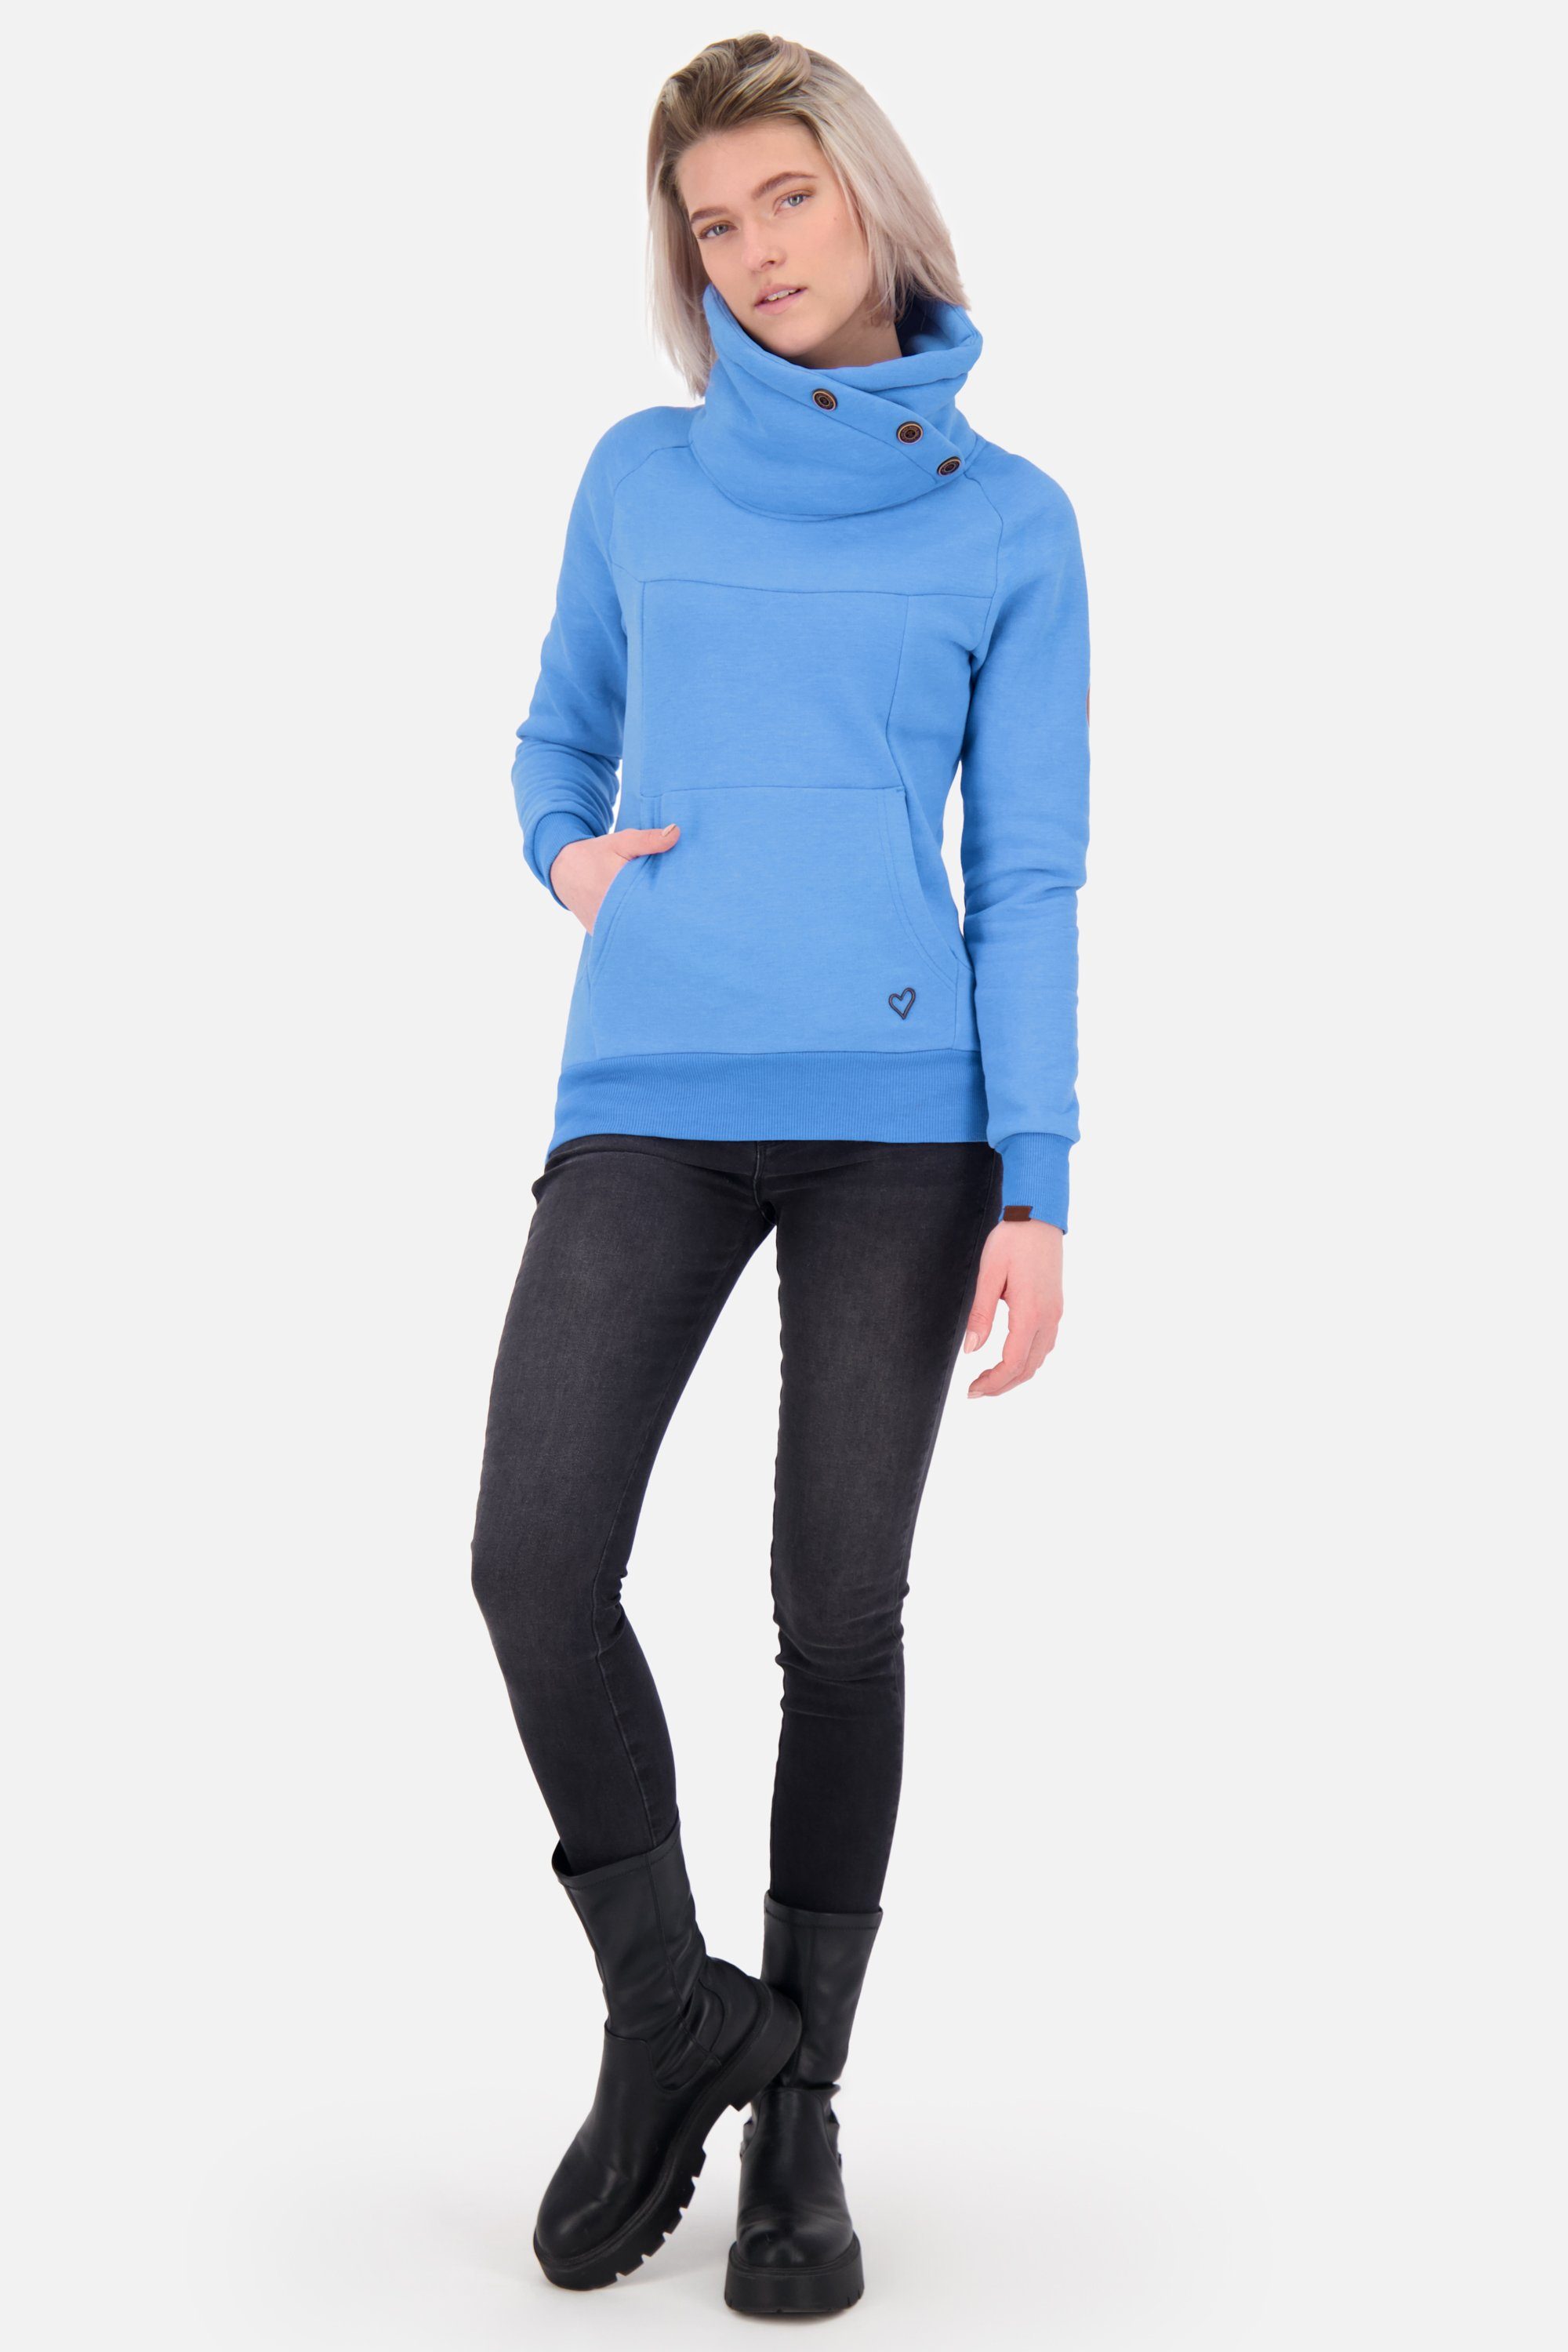 Alife Sweatshirt Sweatshirt VioletAK azure Rundhalspullover, melange Pullover A Kickin Damen &